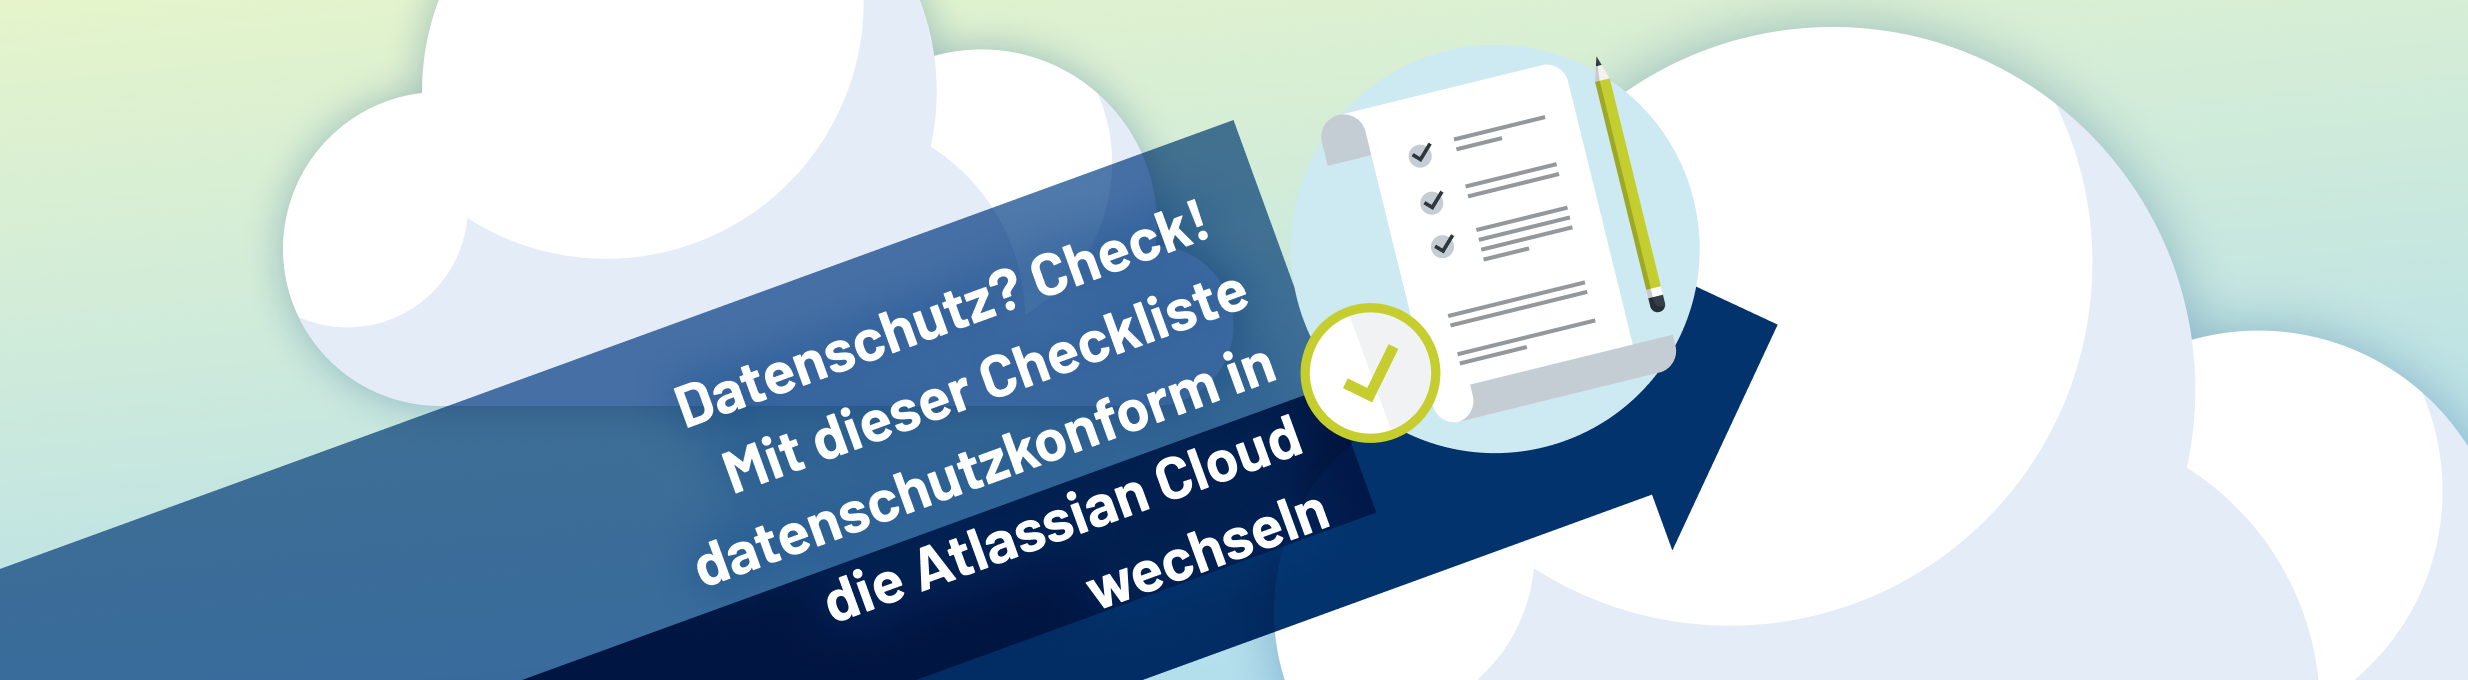 Datenschutz? Check! Wechsle mit dieser Checkliste datenschutzkonform in die Atlassian Cloud